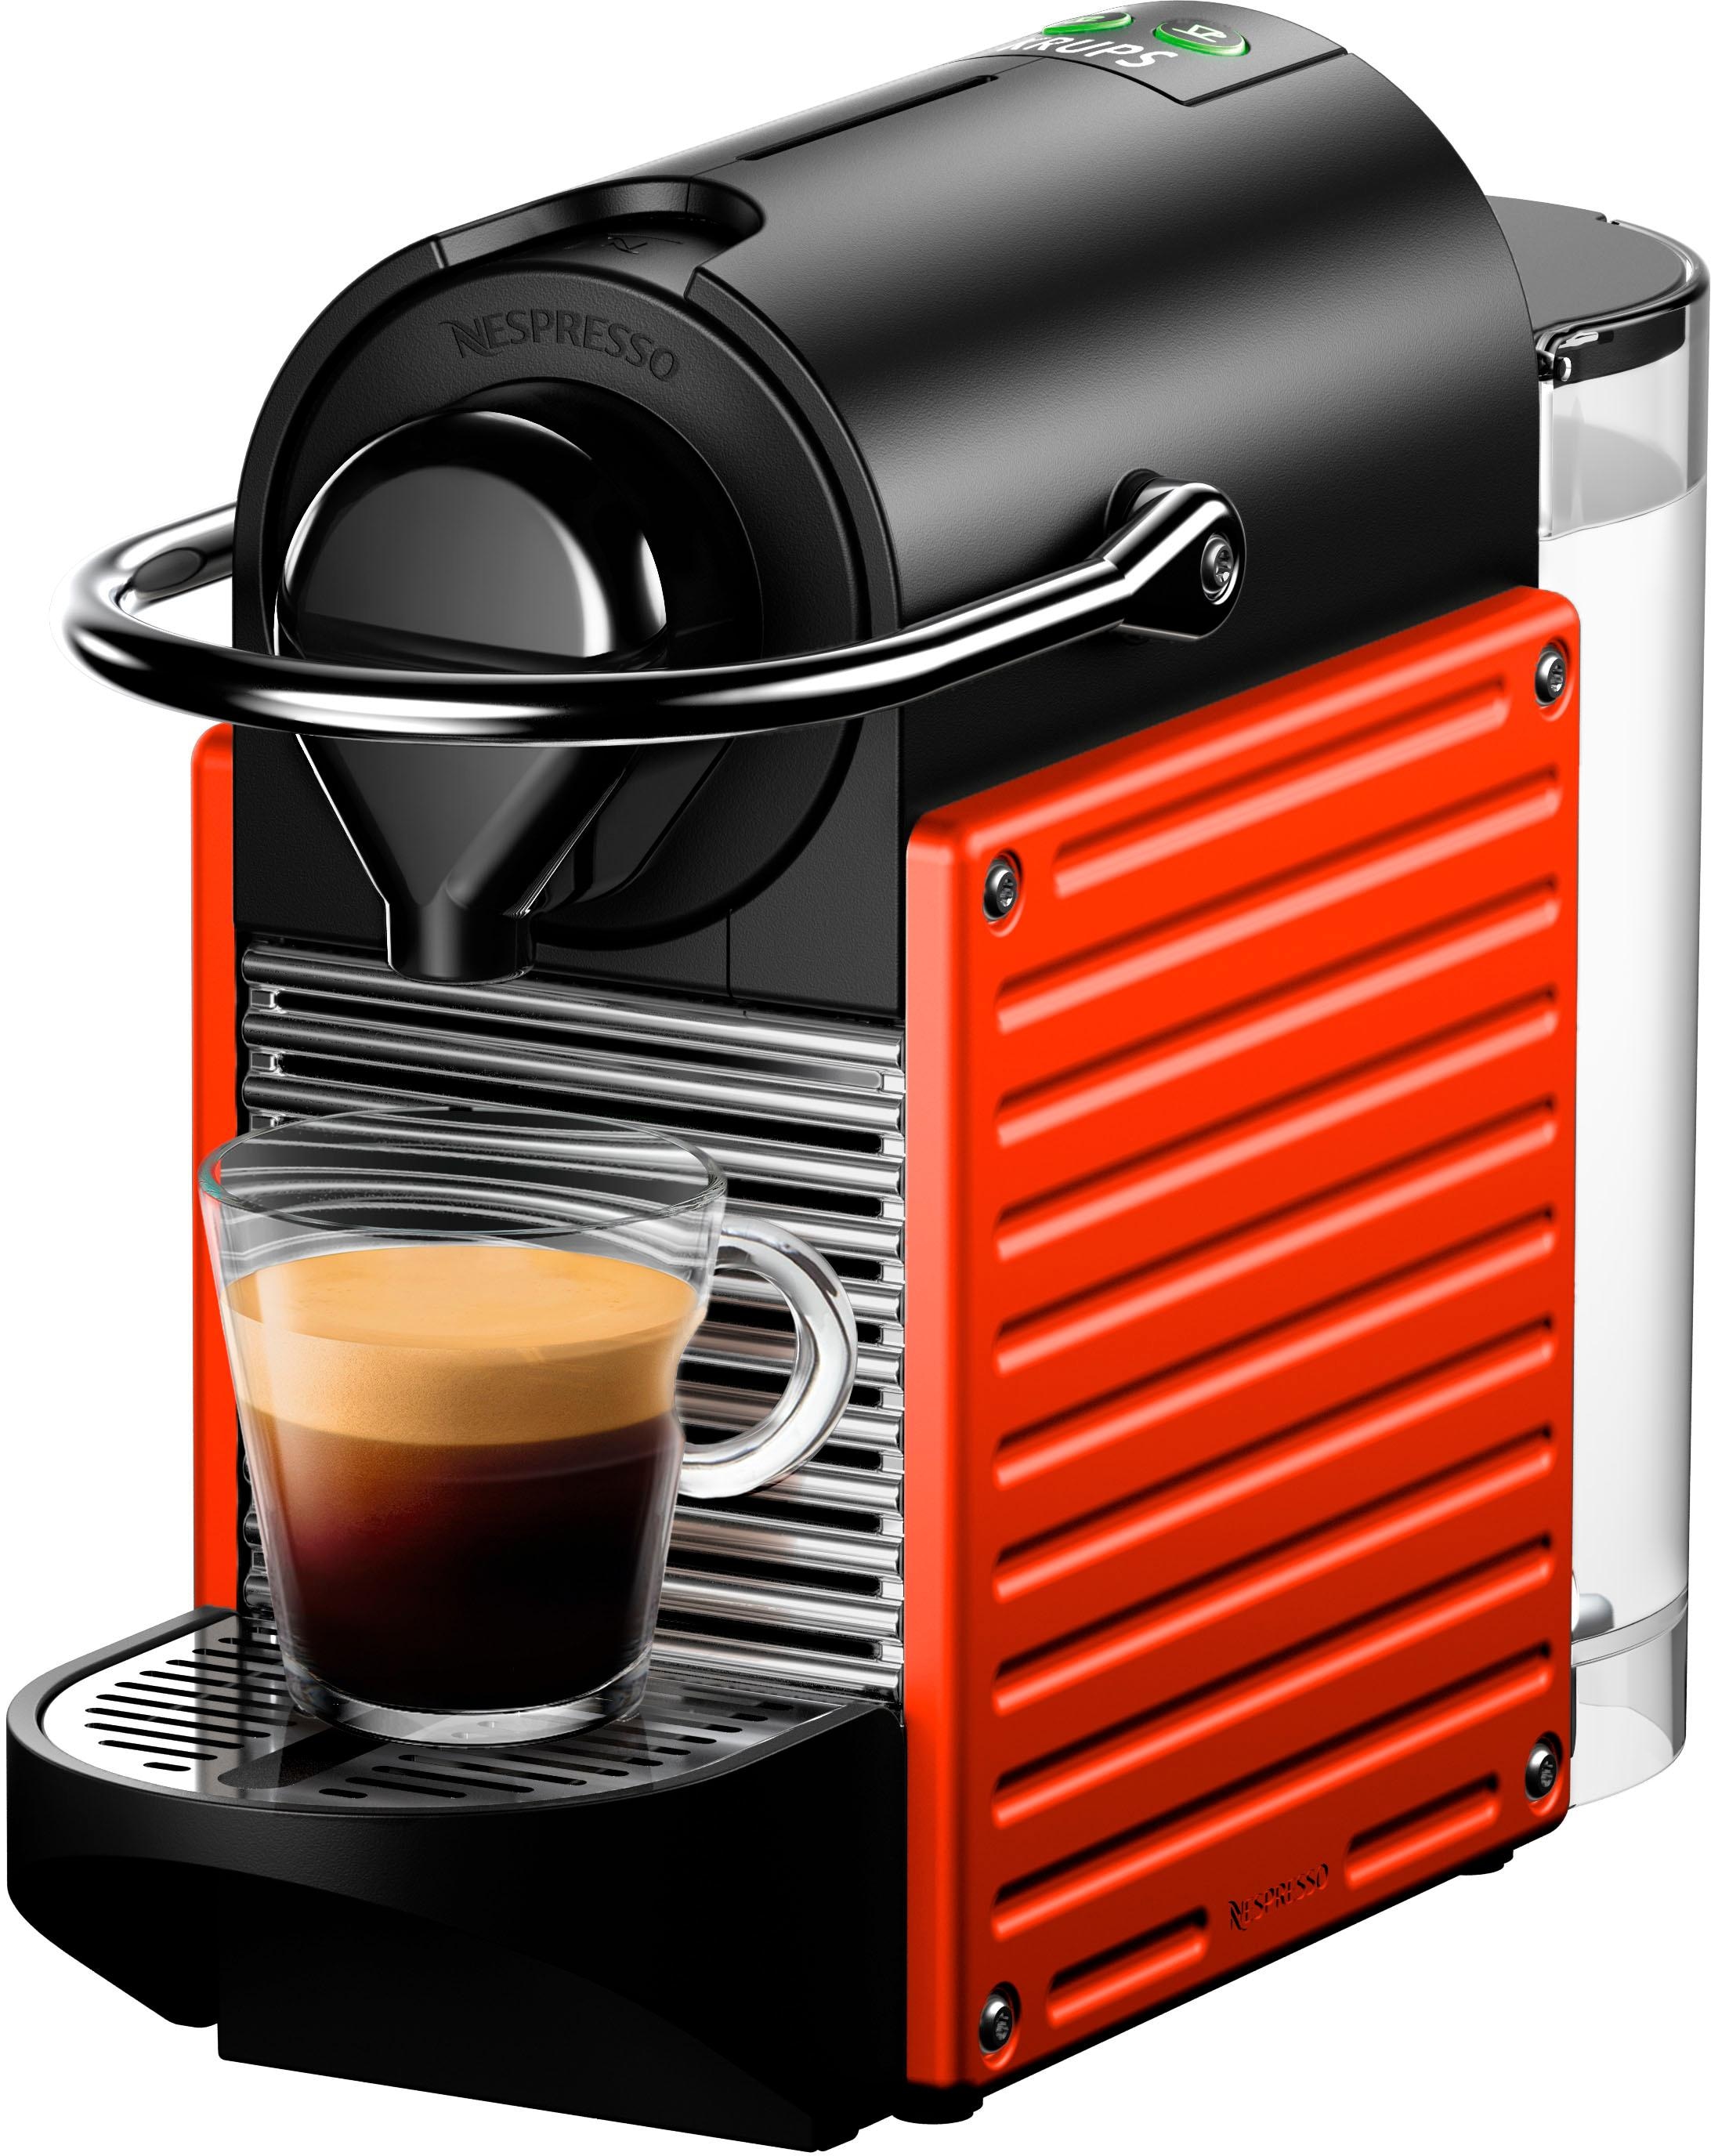 Nespresso Kapselmaschine »Pixie XN3045 von inkl. mit Krups, mit 3 Kapseln Willkommenspaket Red«, Jahren 14 Garantie XXL